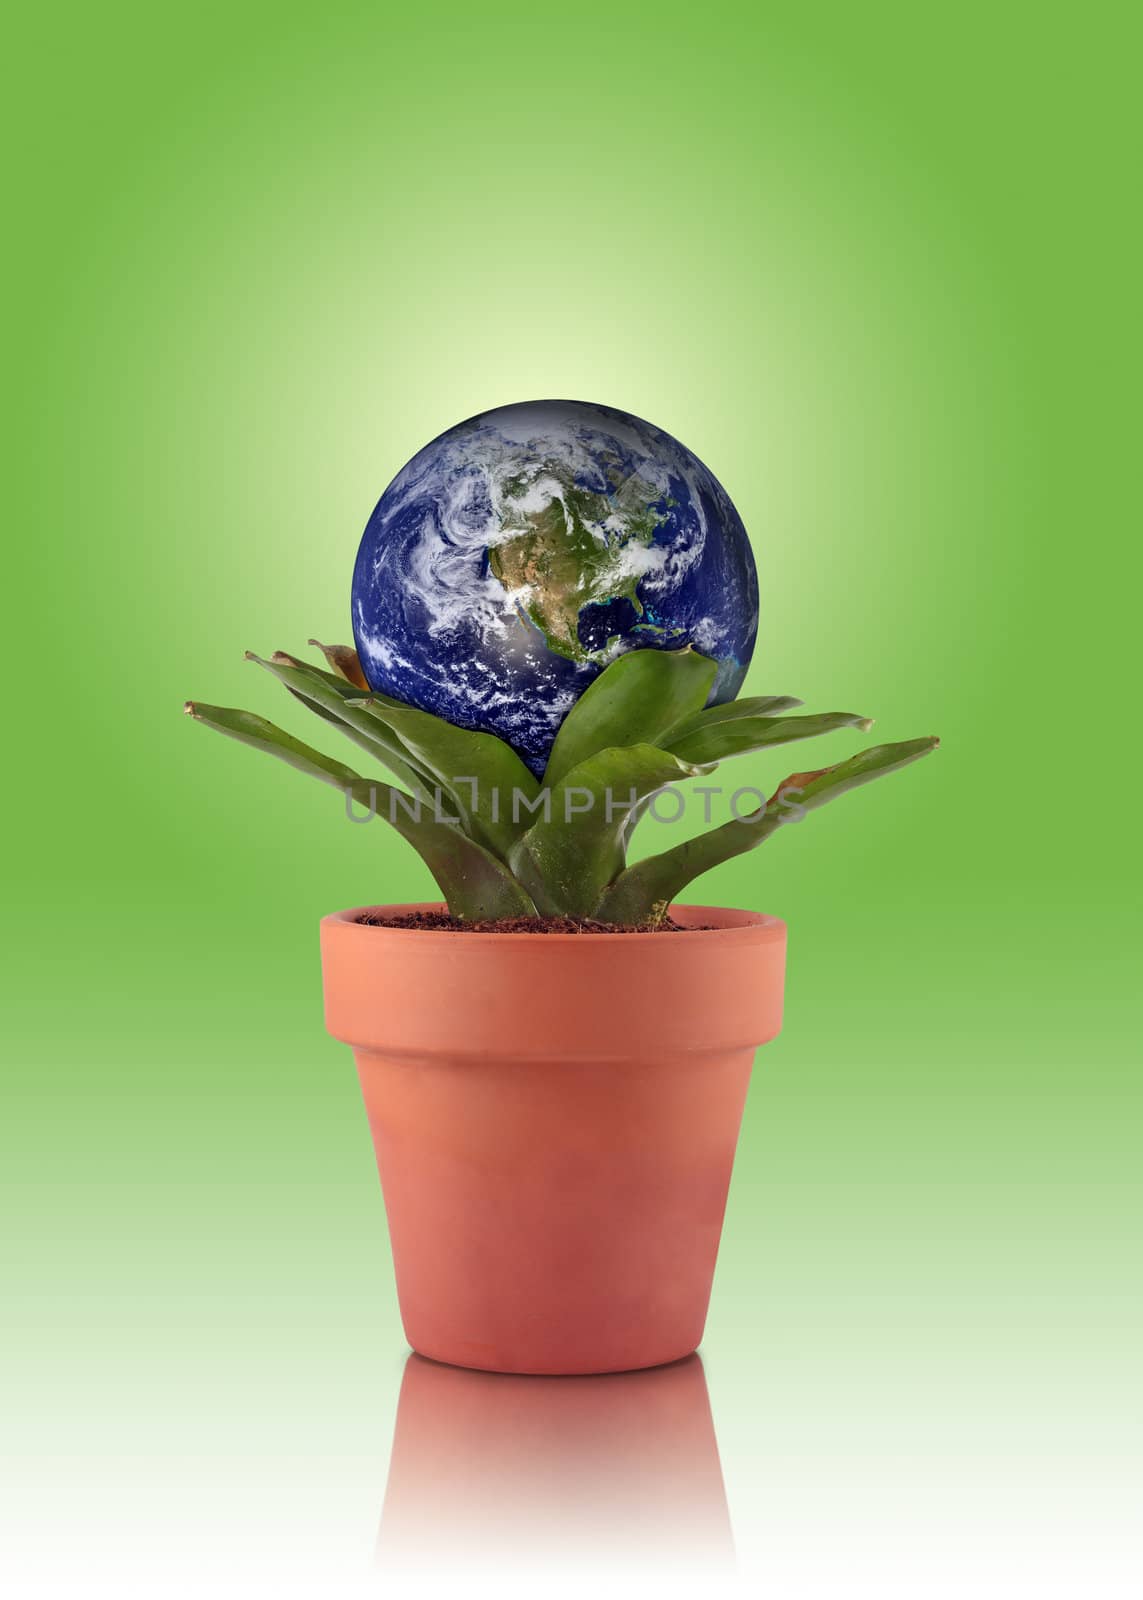 Green Earth by macropixel